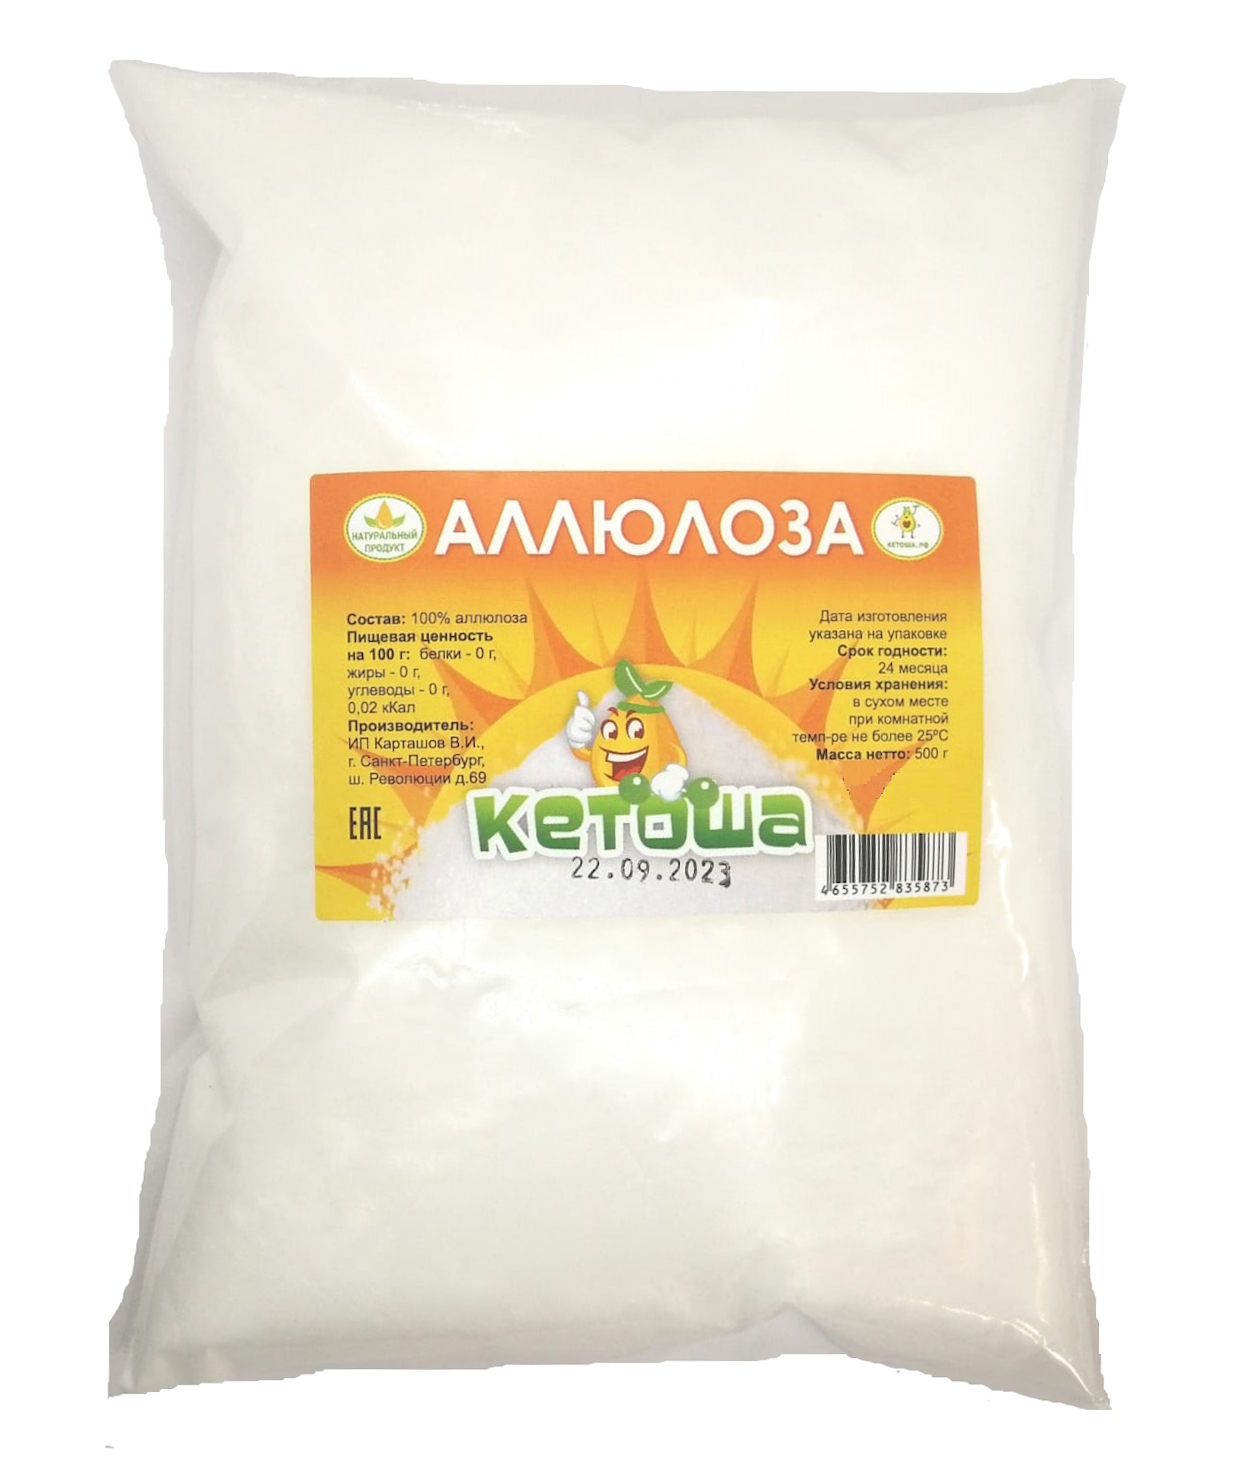 Аллюлоза Кетоша натуральный заменитель сахара, 500 г